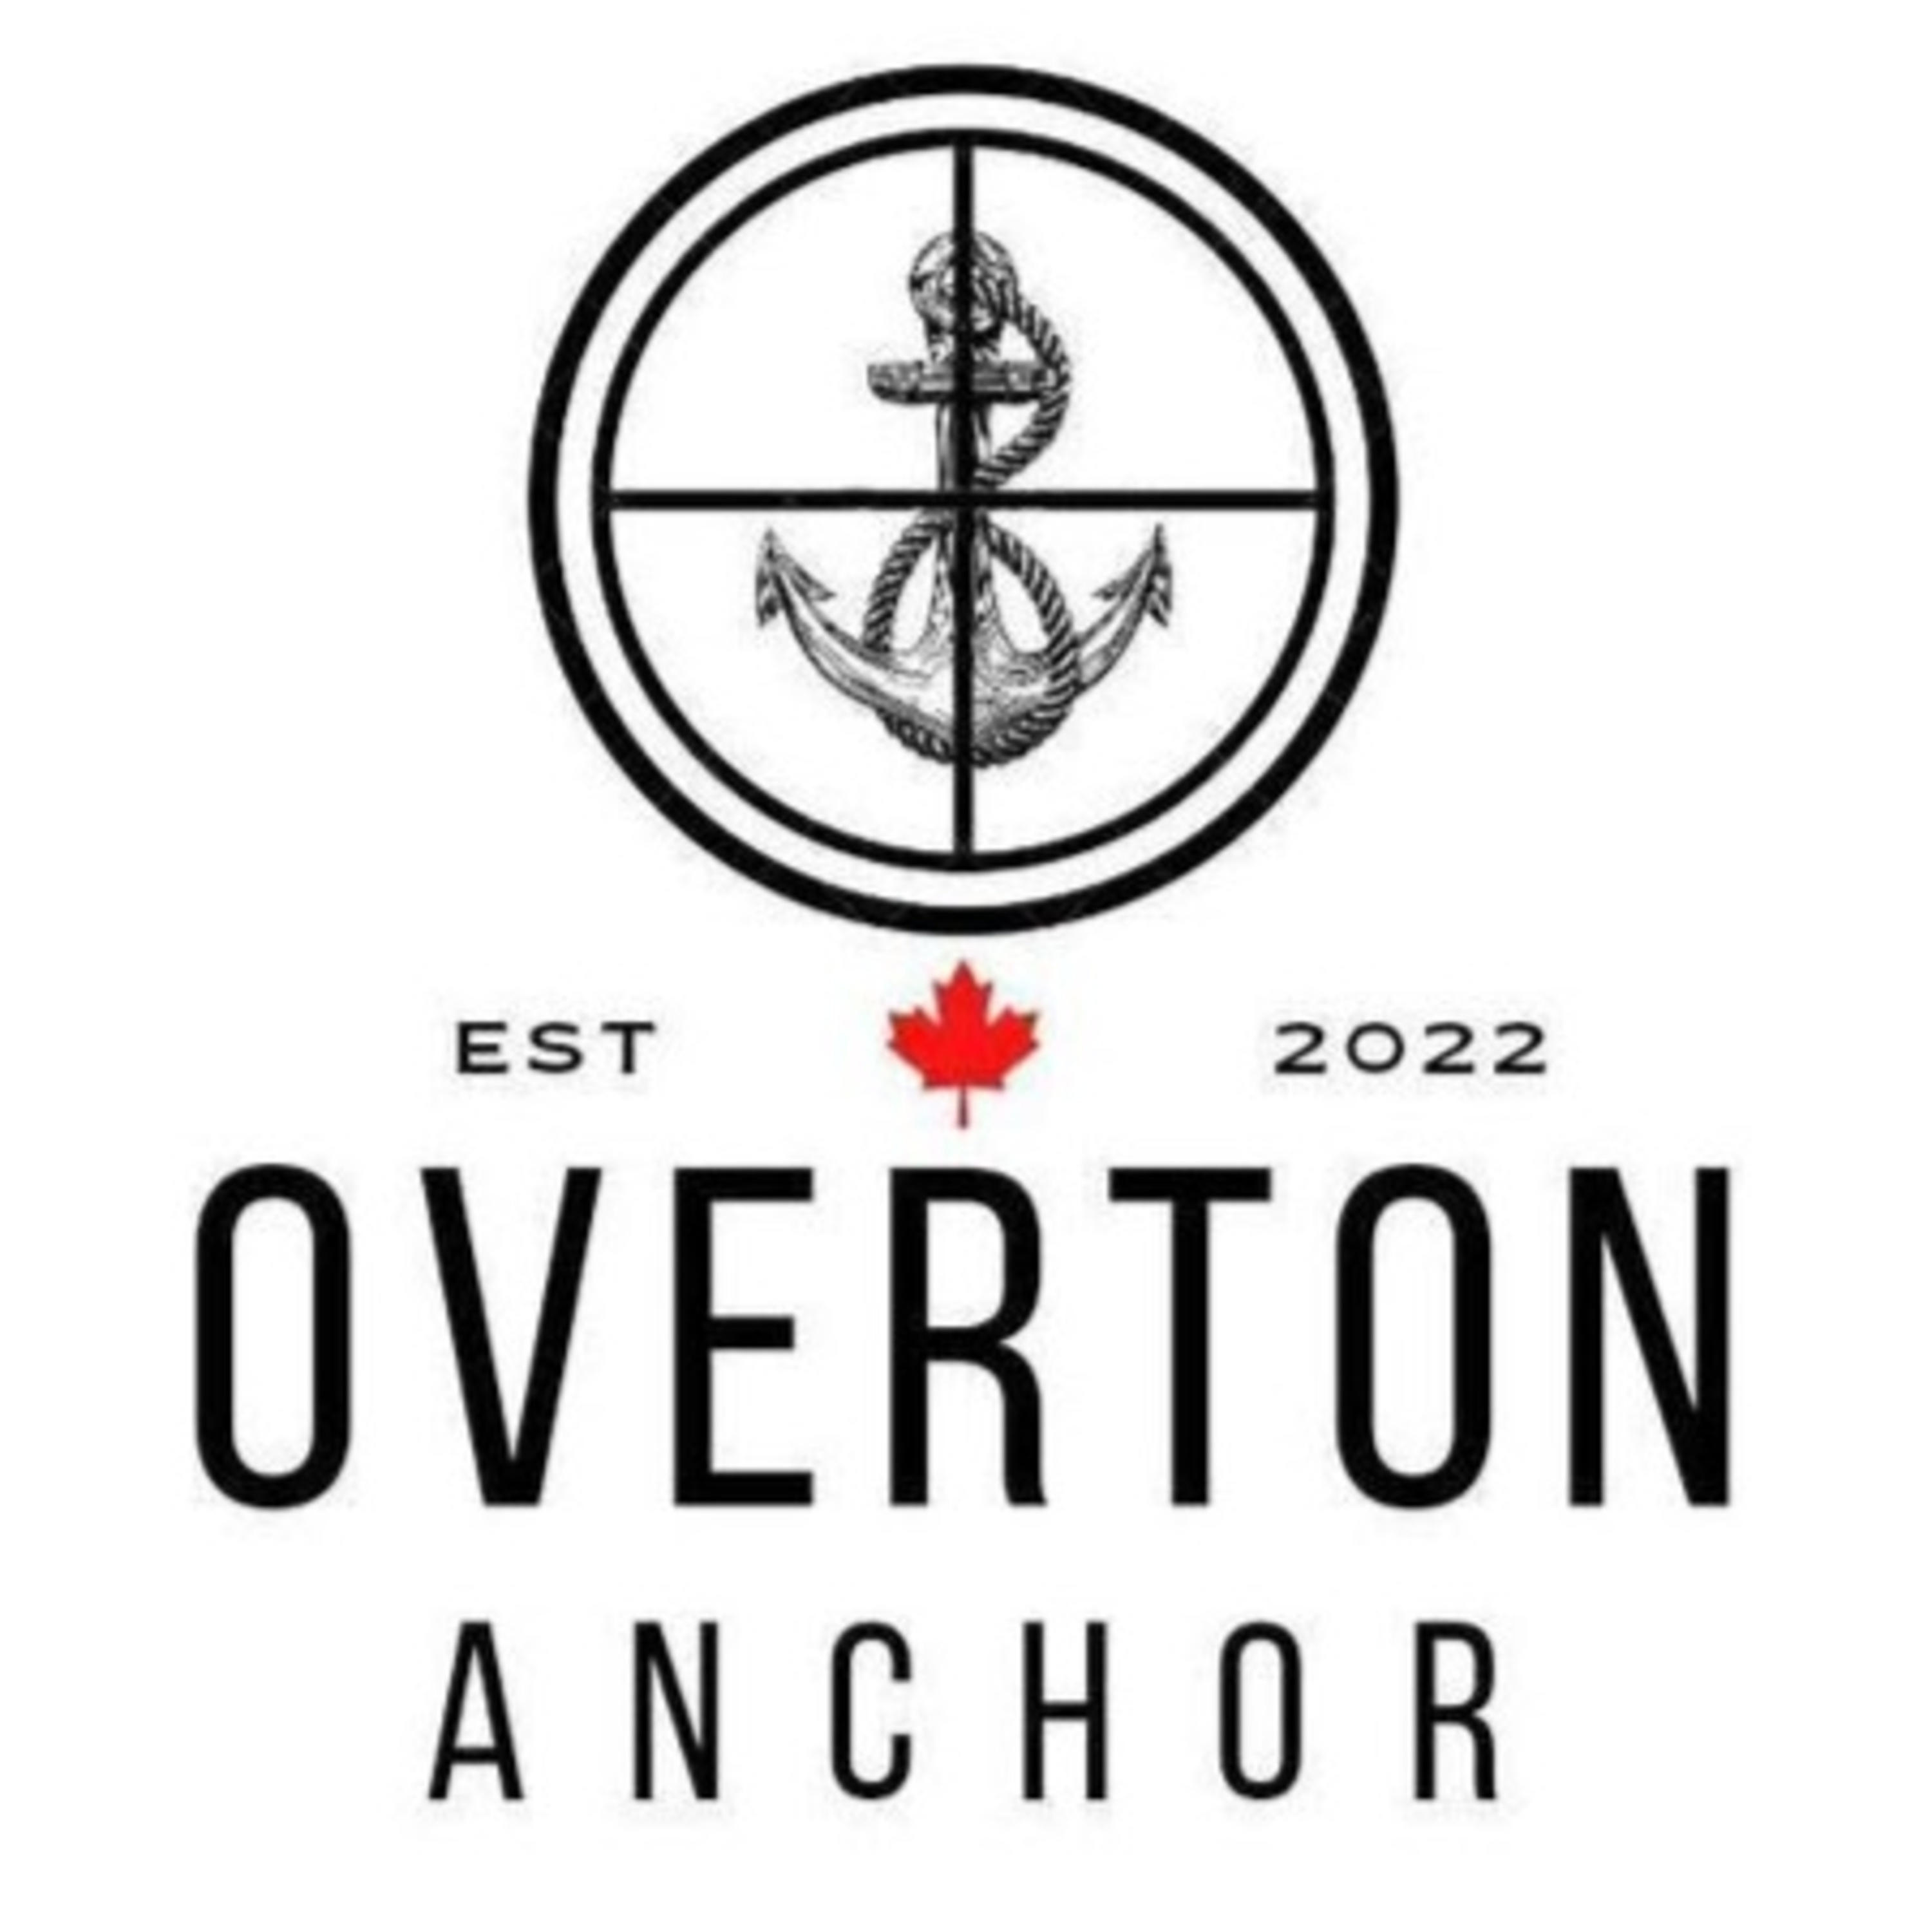 The Overton Anchor